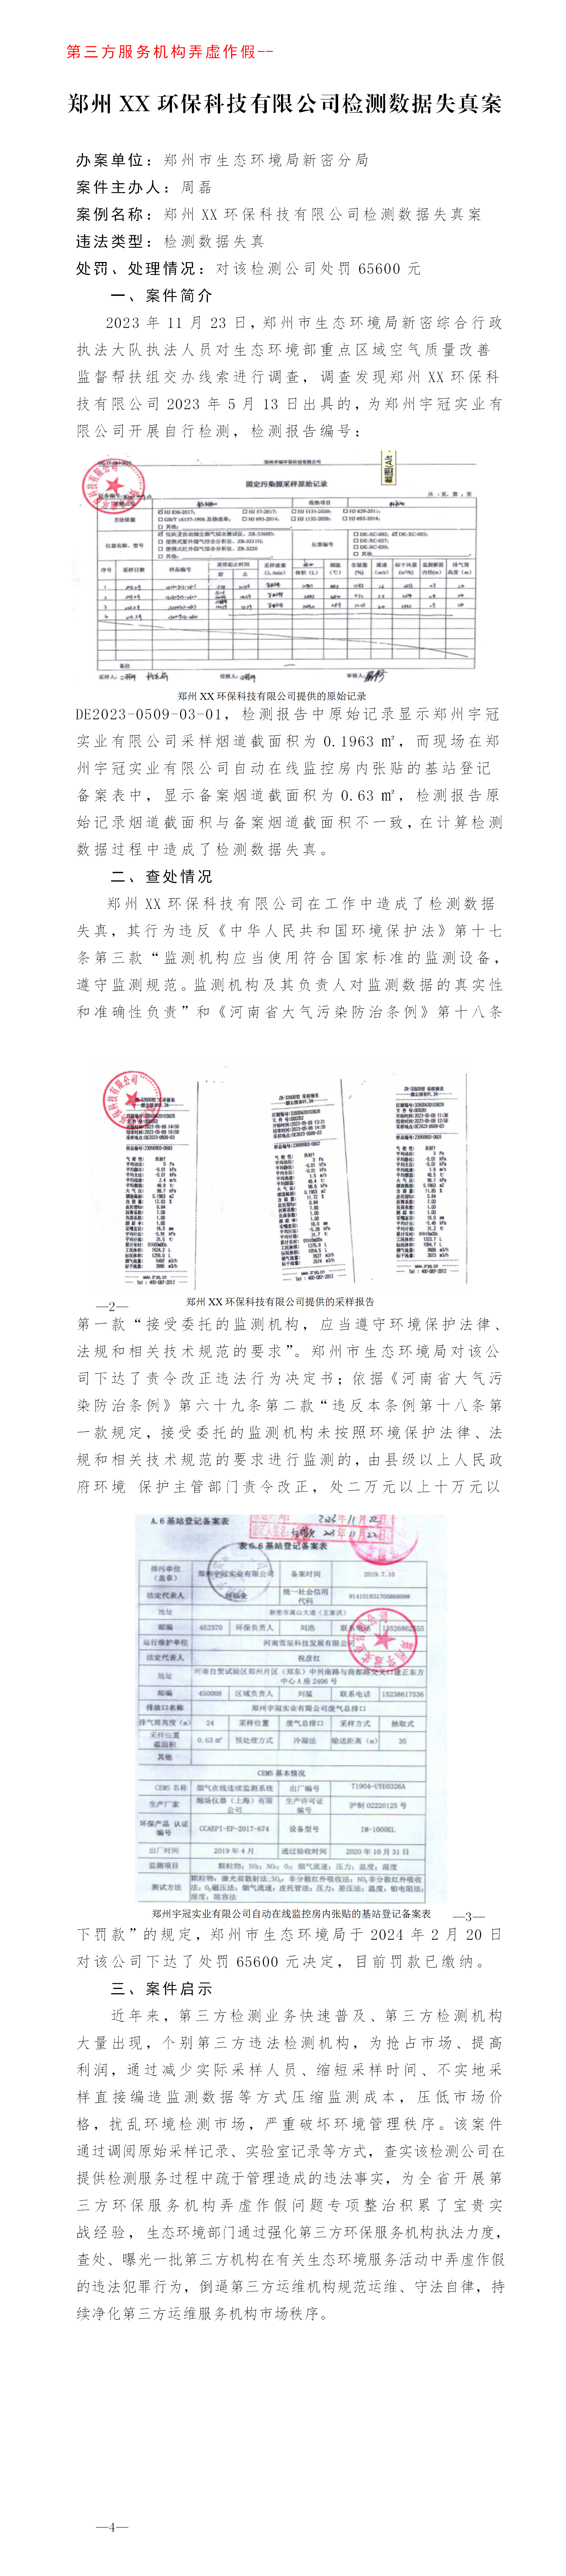 第三方 郑州卓瑞环保科技有限公司检测数据失真案_01.png